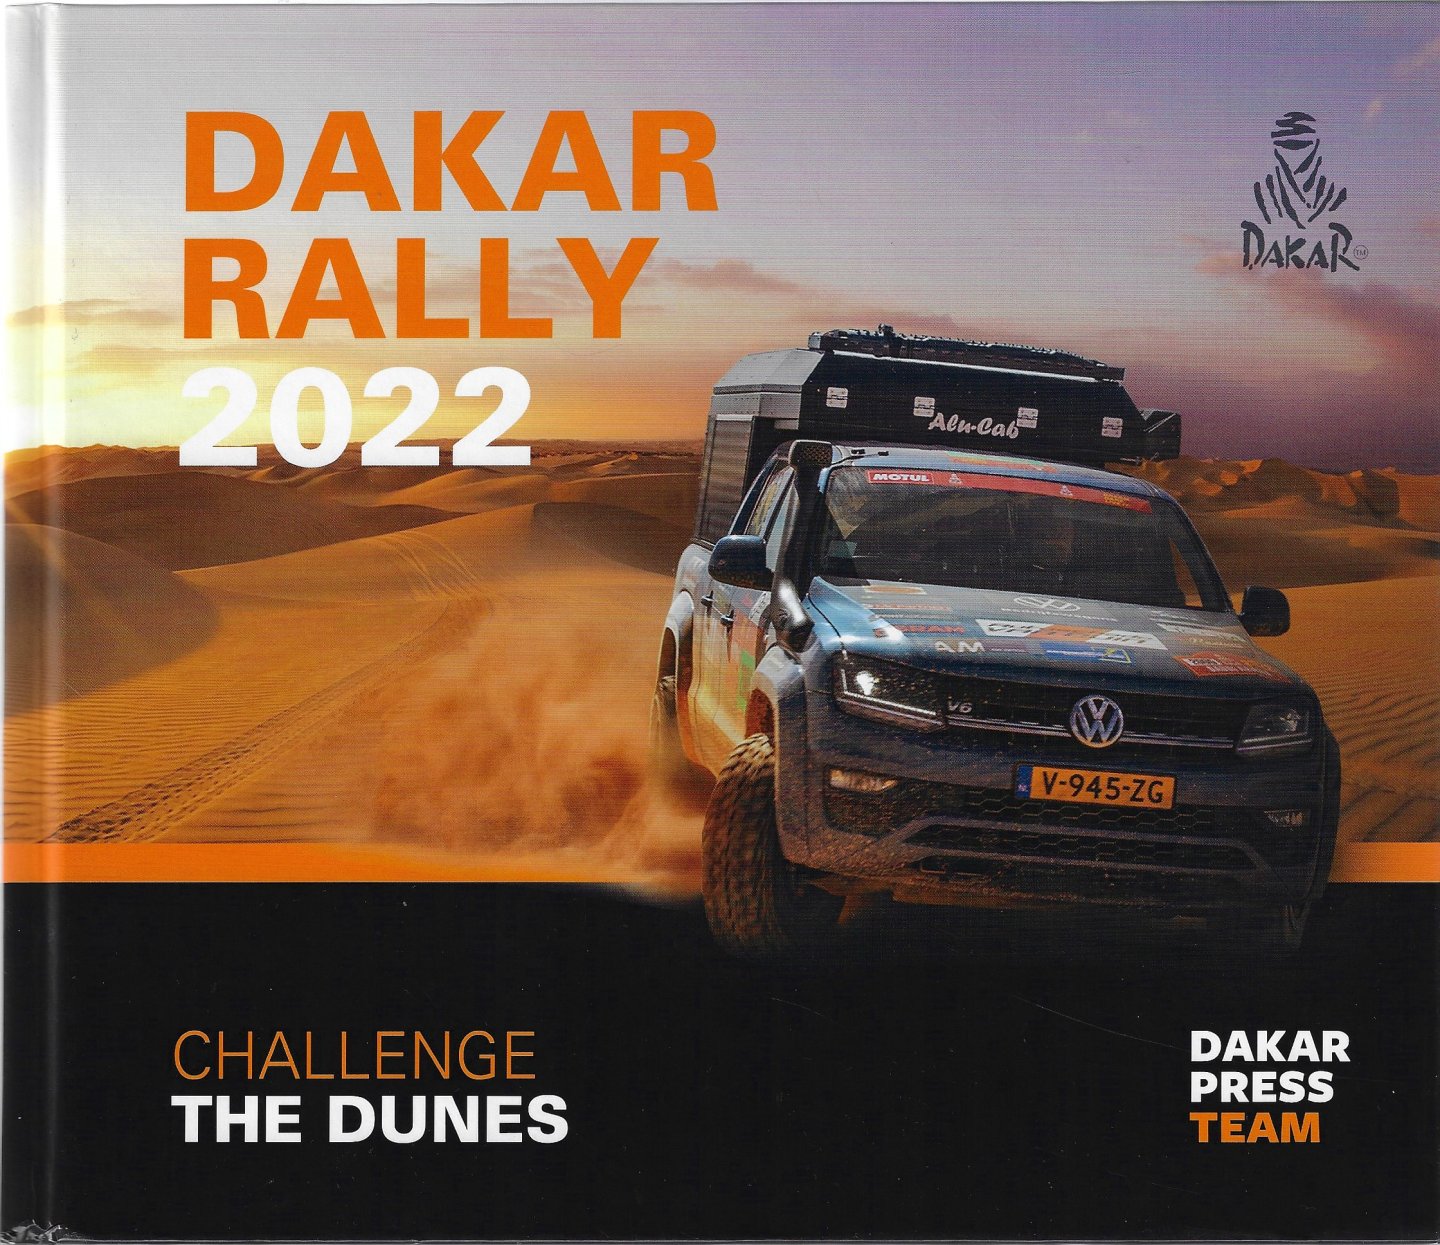 Dakar Press Team - Dakar Rally 2022 -Challenge the dunes